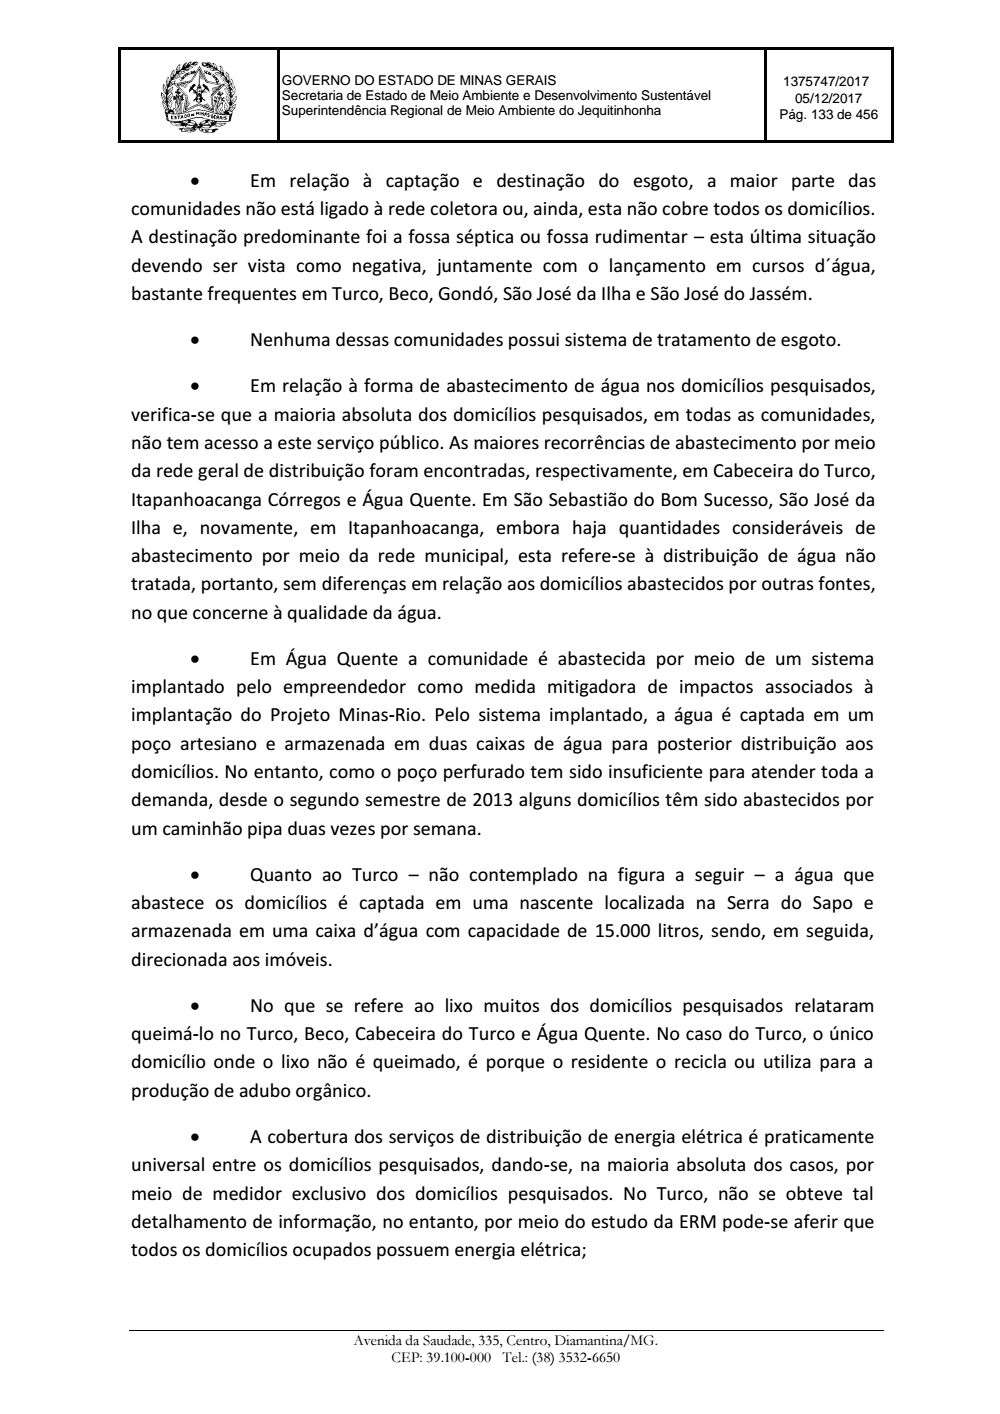 Page 133 from Parecer único da Secretaria de estado de Meio Ambiente e Desenvolvimento Sustentável (SEMAD)